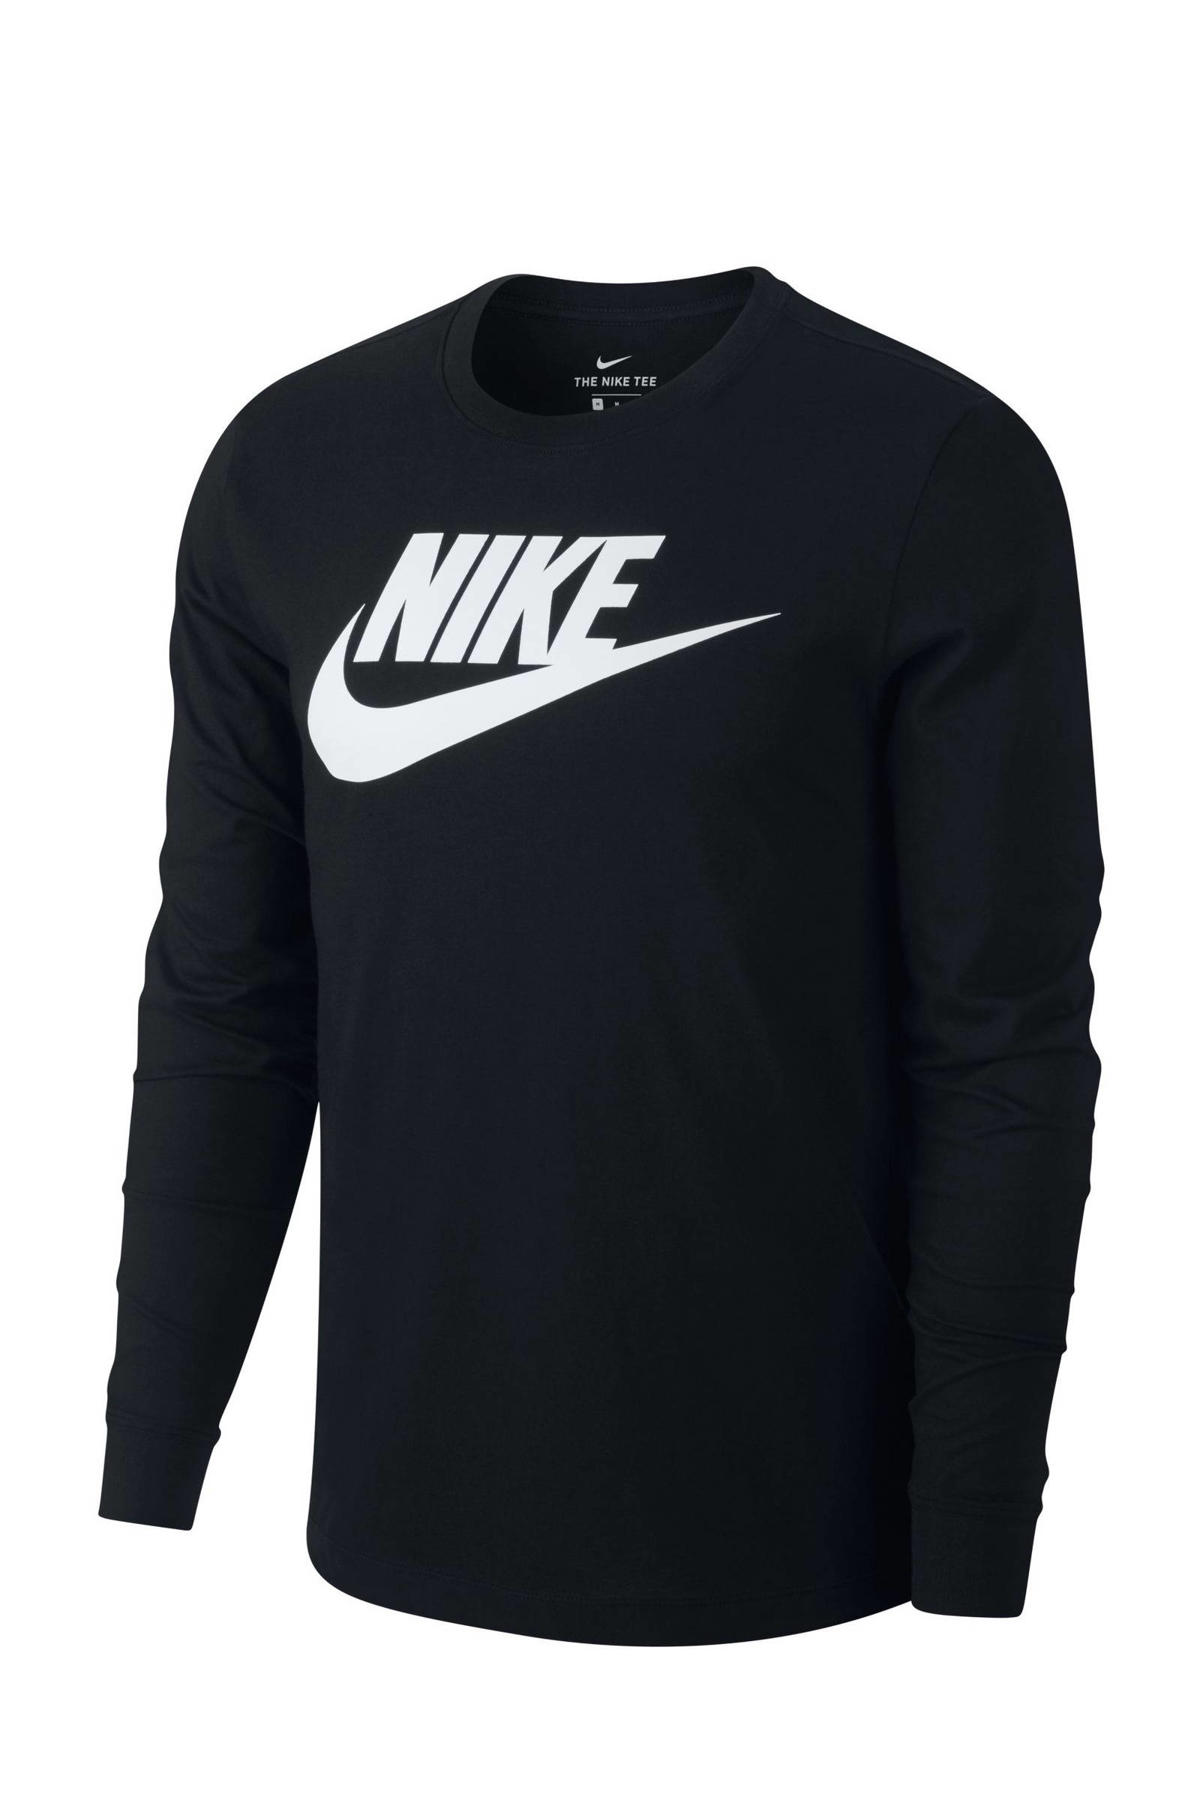 lamp Ontwijken Allemaal Nike sweater zwart | wehkamp